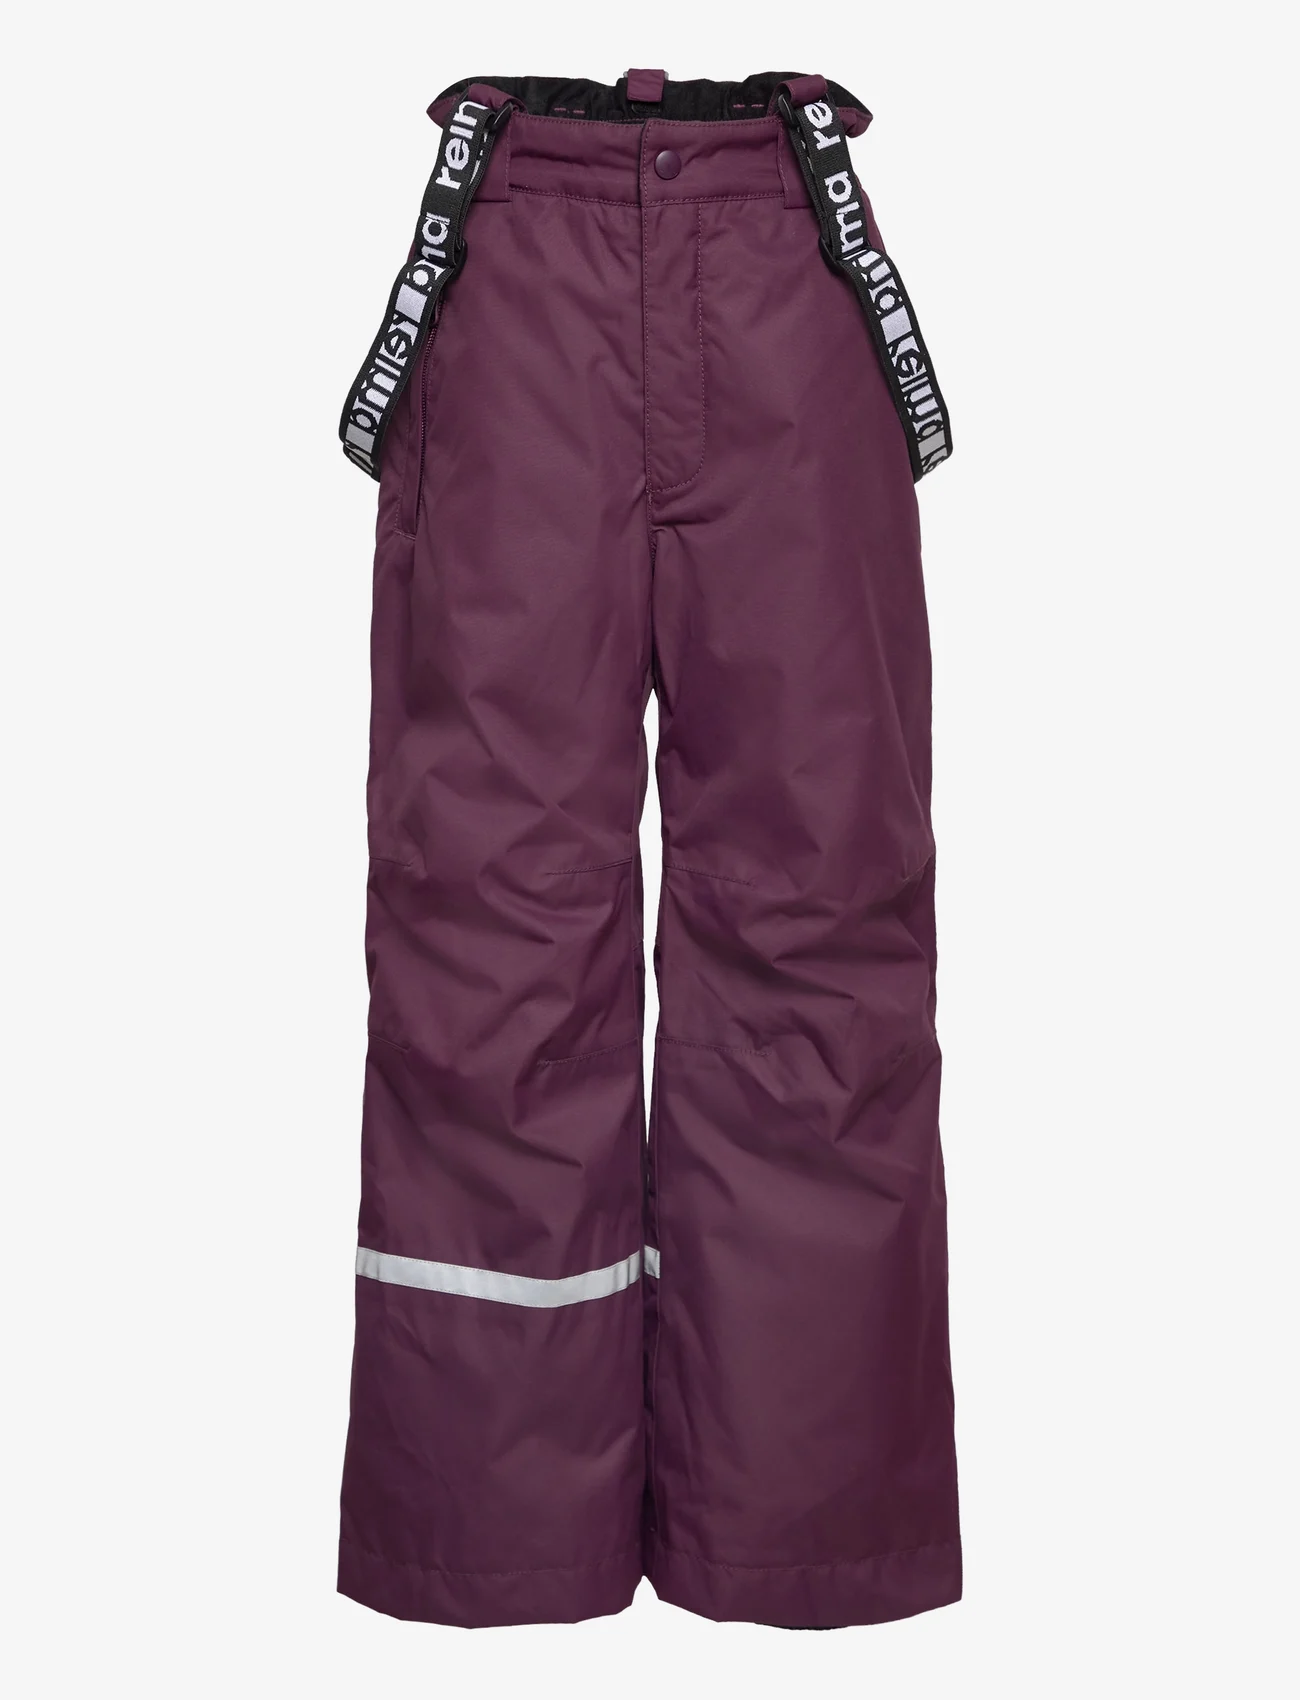 Reima - Winter pants, Tuokio - ulkohousut - deep purple - 0